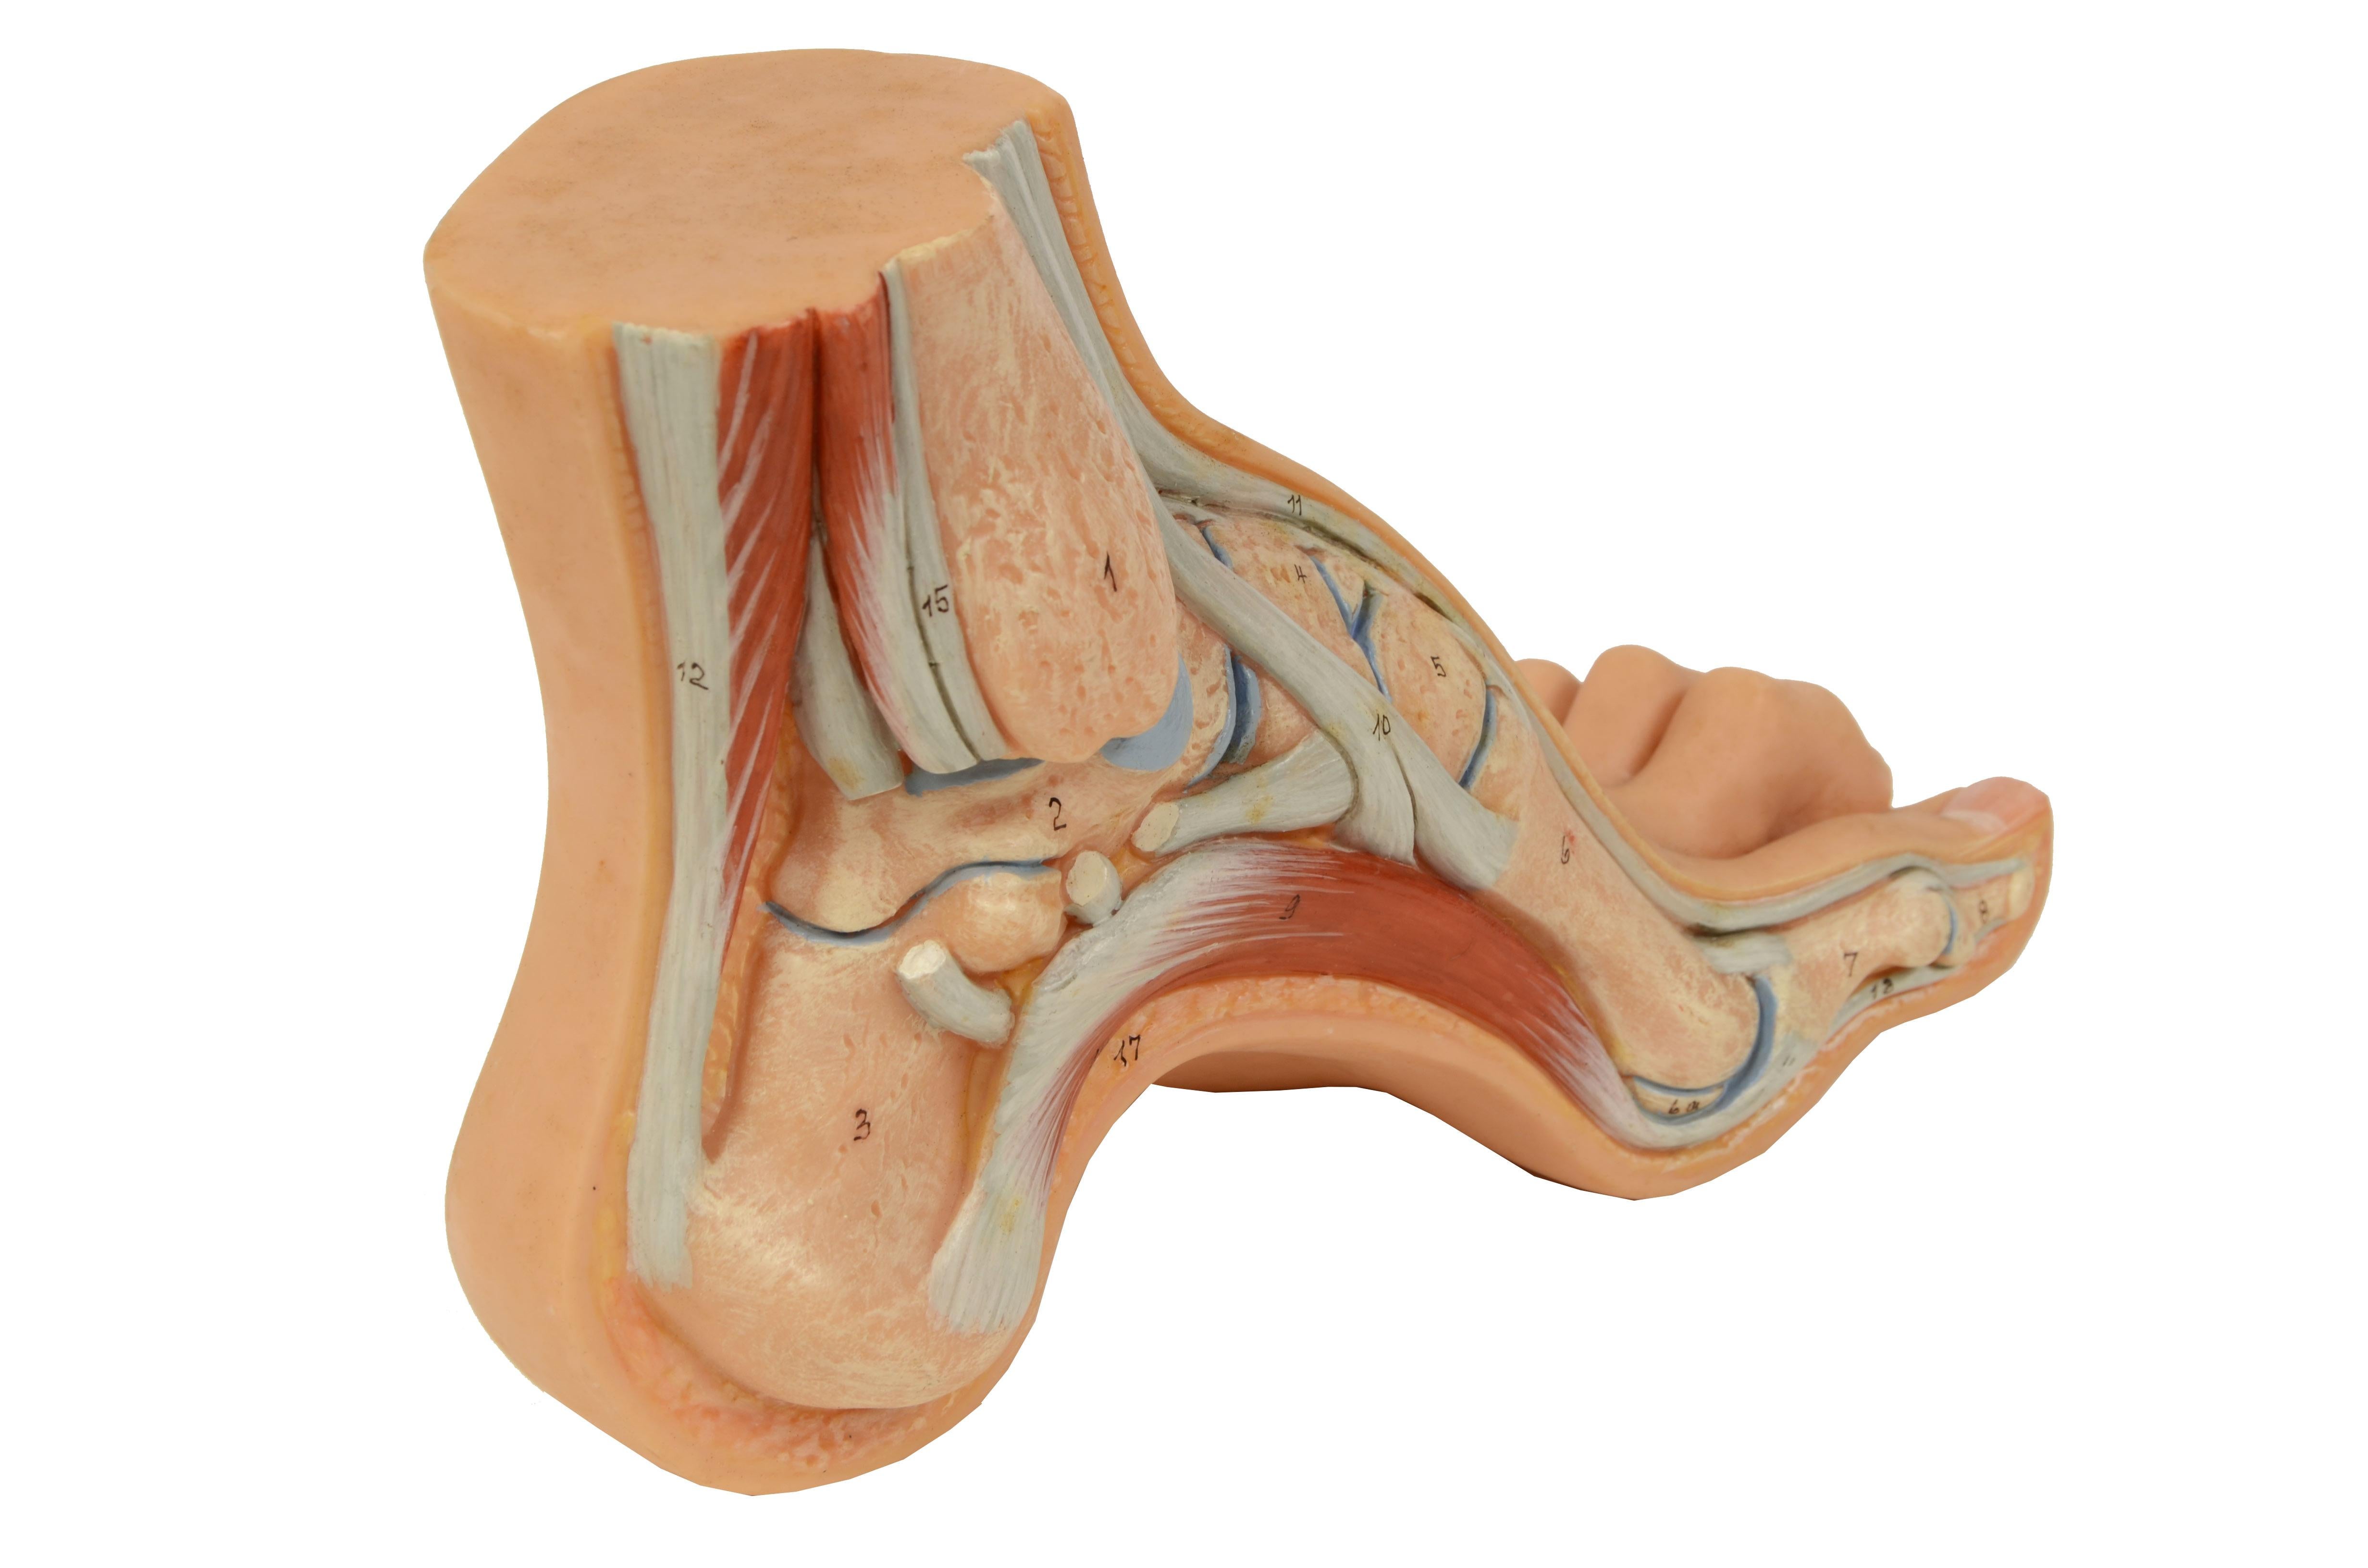 Anatomisches Lehrmodell in normaler Größe, das einen Hohlfuß im Schnitt zeigt, bei dem das Fußgewölbe stark ausgeprägt ist und die Fußauflage hauptsächlich auf dem Vorfuß und der Ferse liegt. 
Der geschnittene Teil zeigt die verschiedenen Teile des